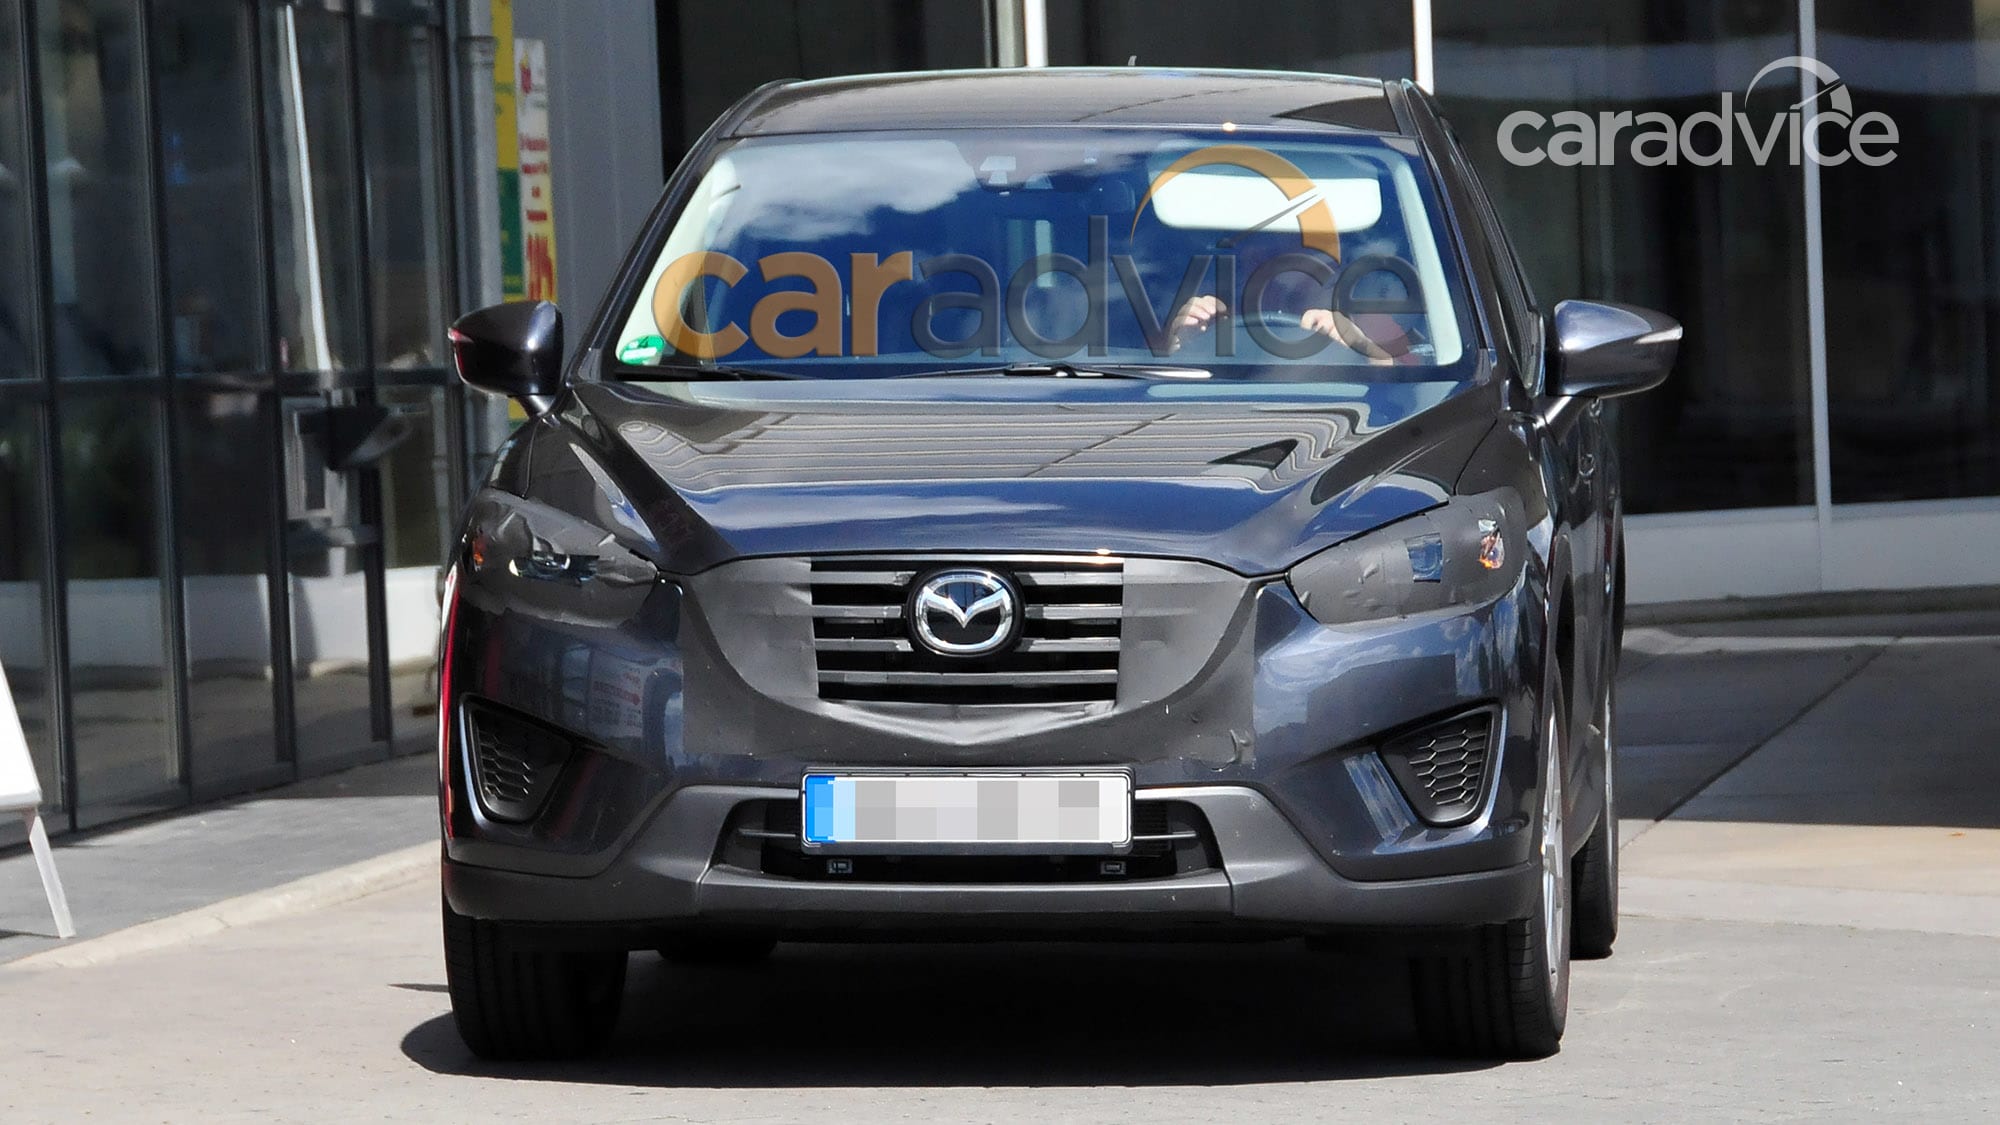 Mazda CX 5 facelift spy photos CarAdvice